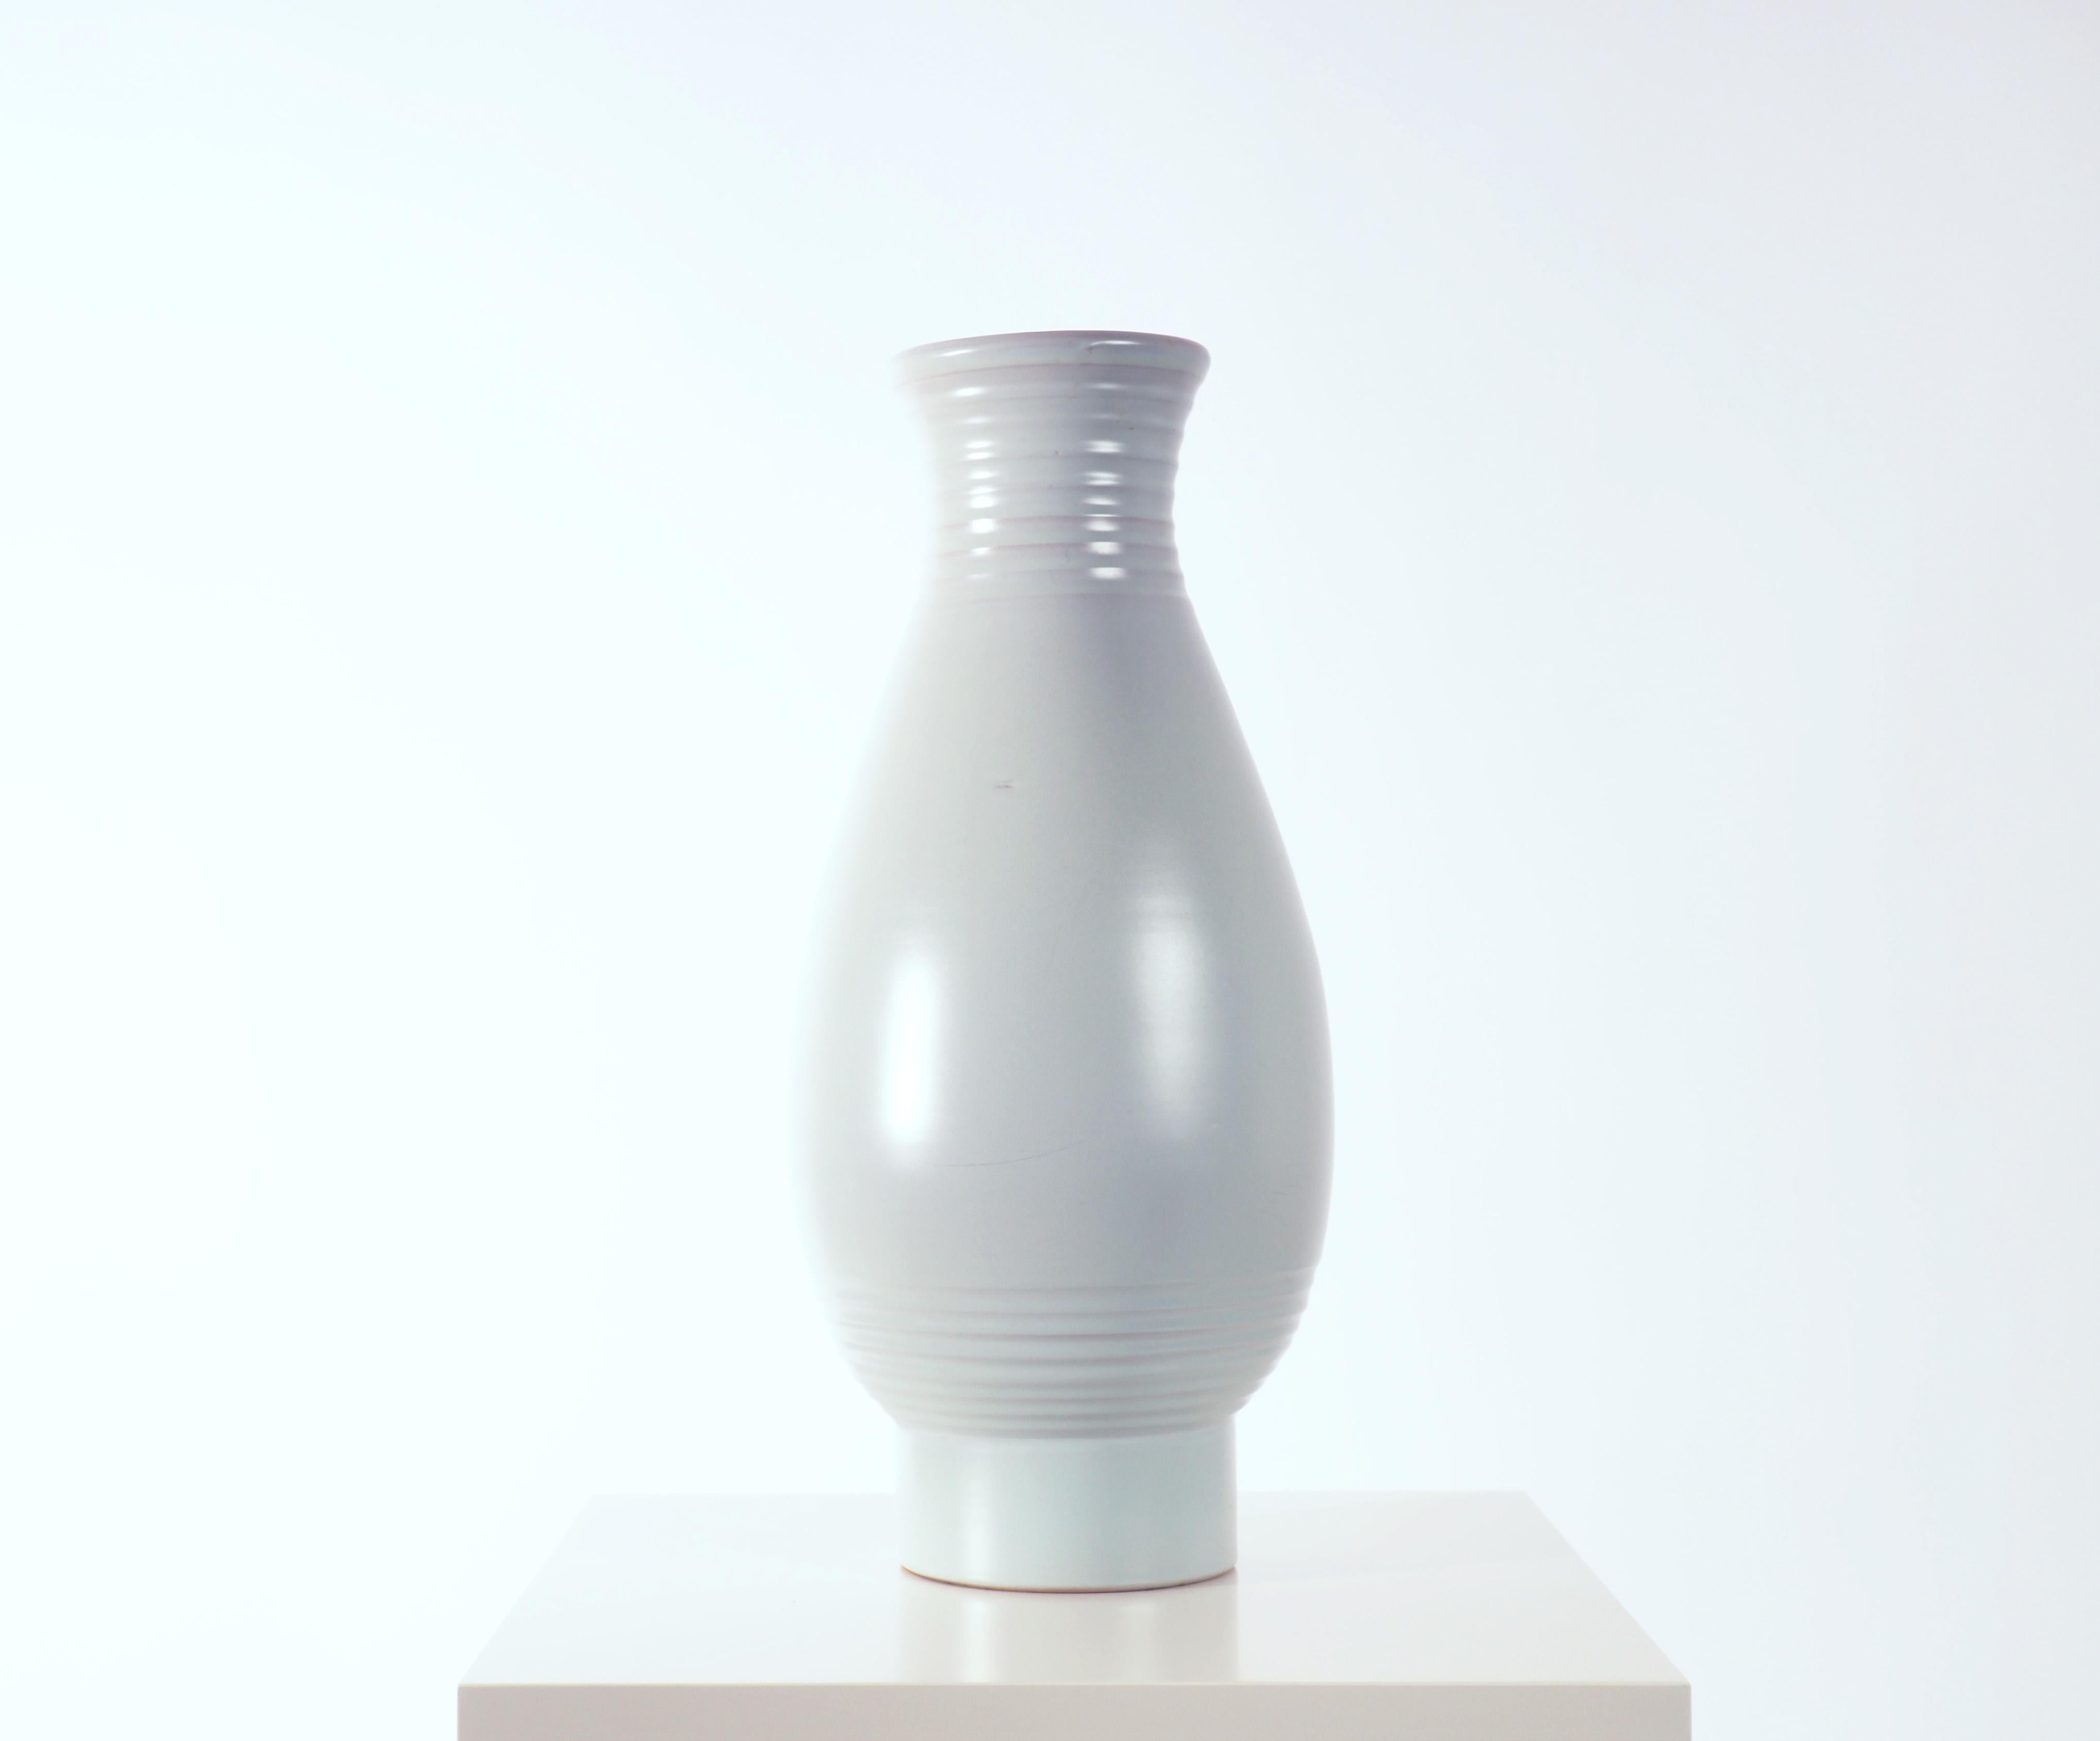 Vase de sol bleu pâle conçu par Ewald Dahlskog. Il a commencé sa production à la BIGLI pour la grande exposition de Stockholm en 1930 et a été l'un des pionniers du style moderniste dans la céramique suédoise. 

Livraison gratuite dans le monde